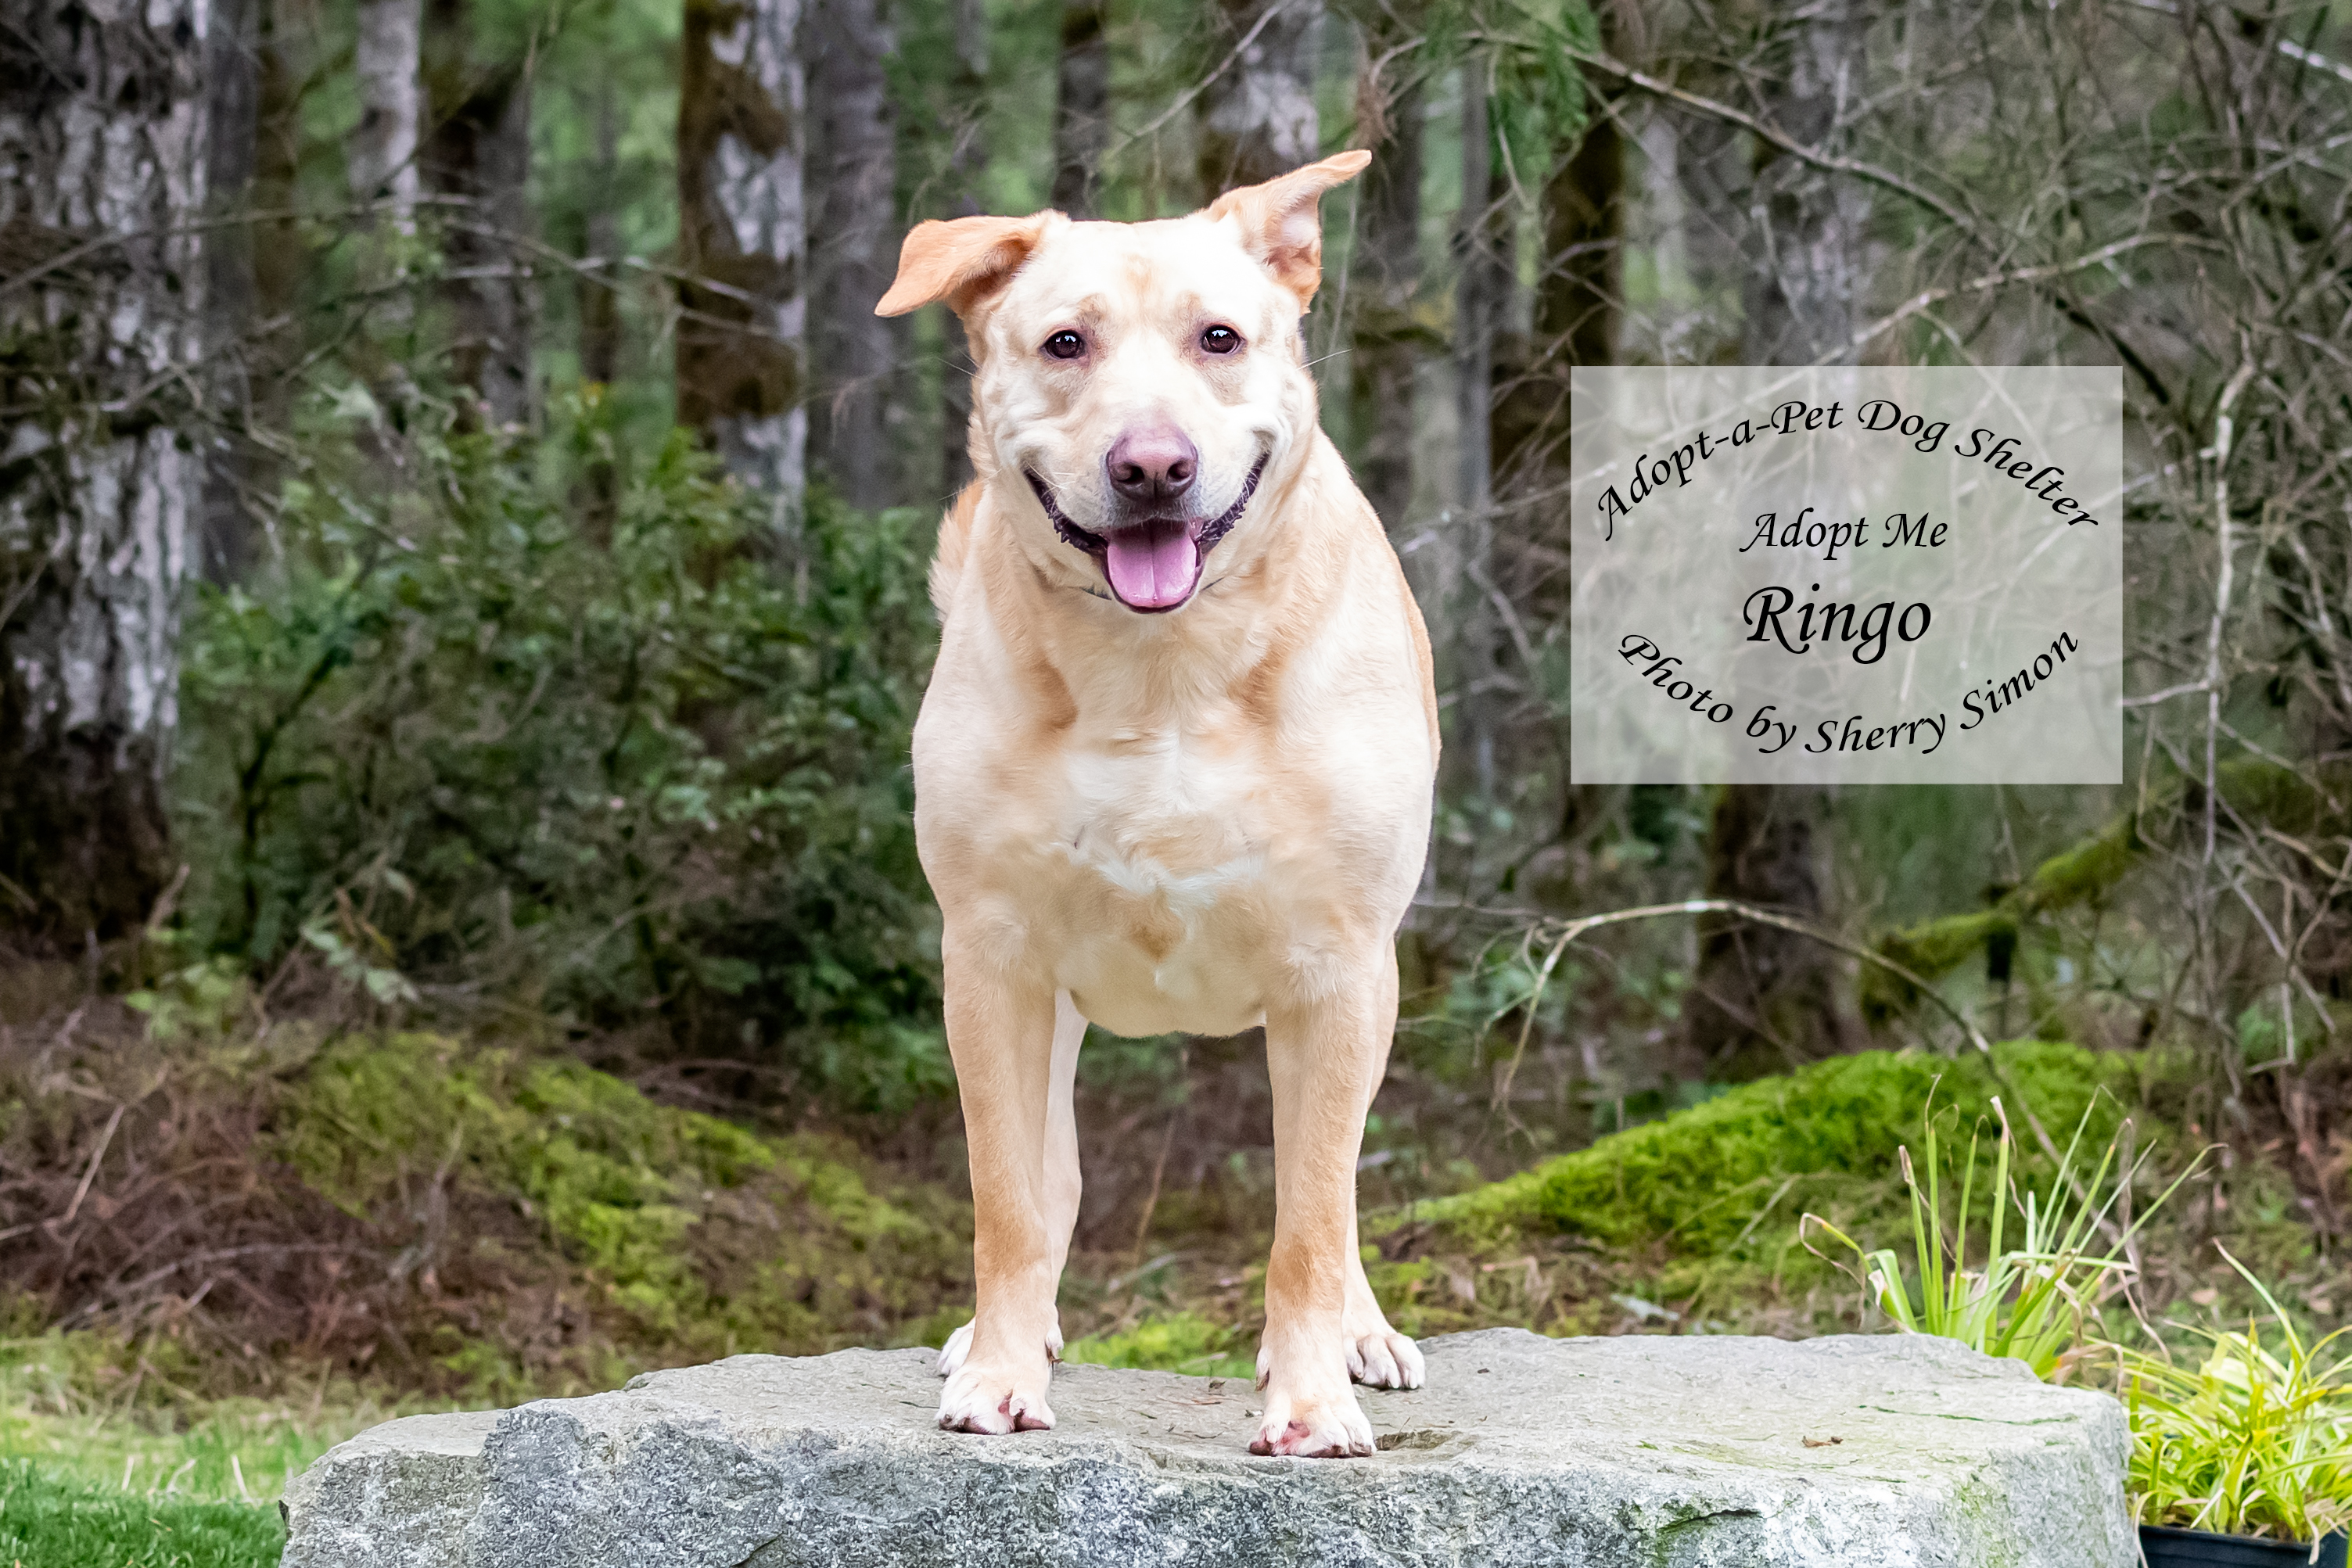 RINGO, an adoptable Labrador Retriever in Shelton, WA, 98584 | Photo Image 4